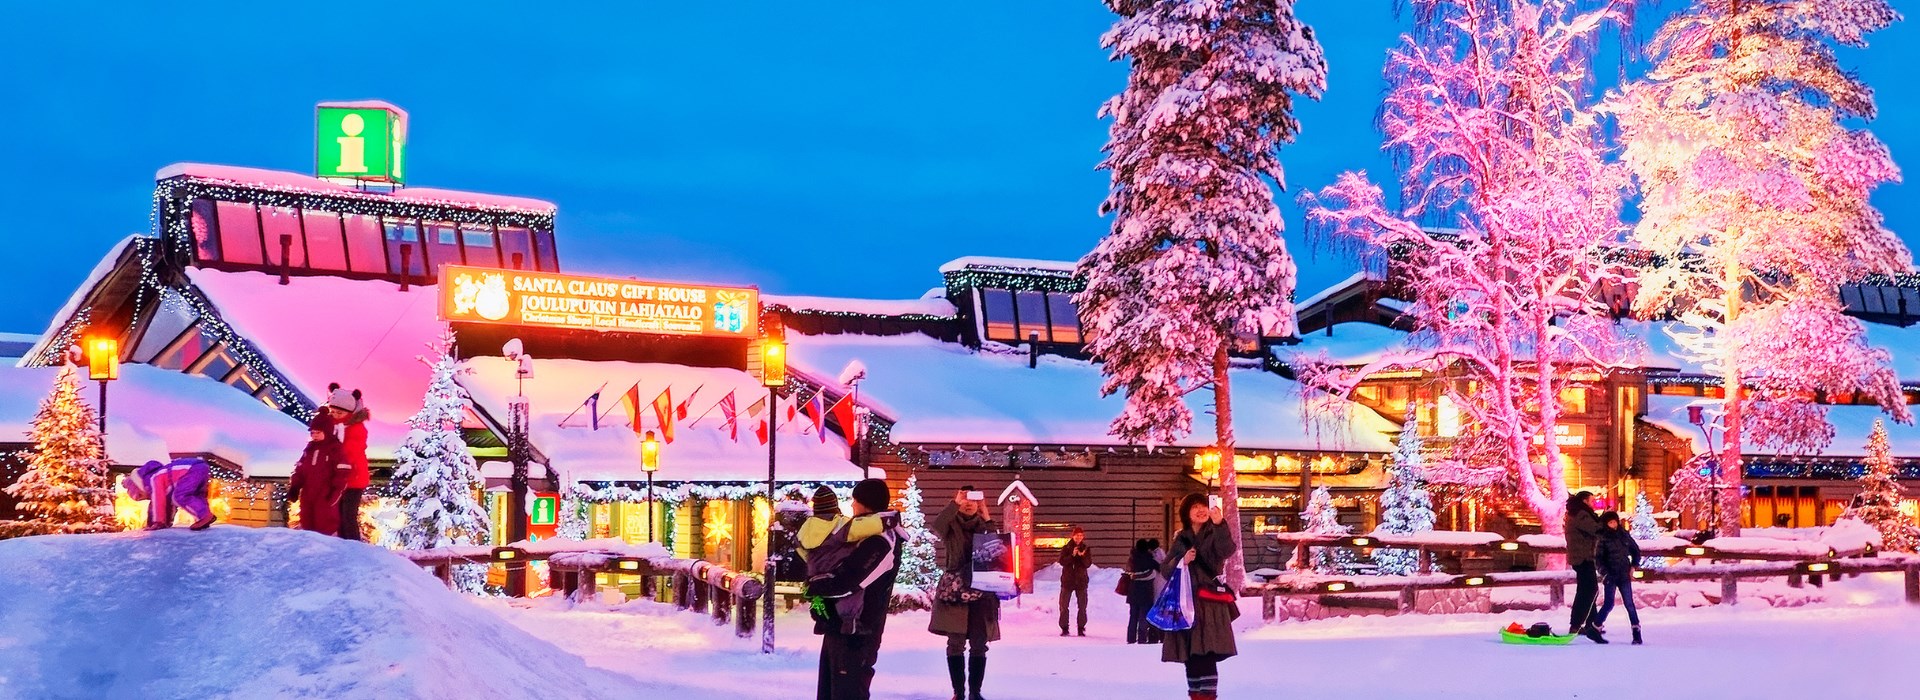 Visiter Le village du Père Noël - Laponie